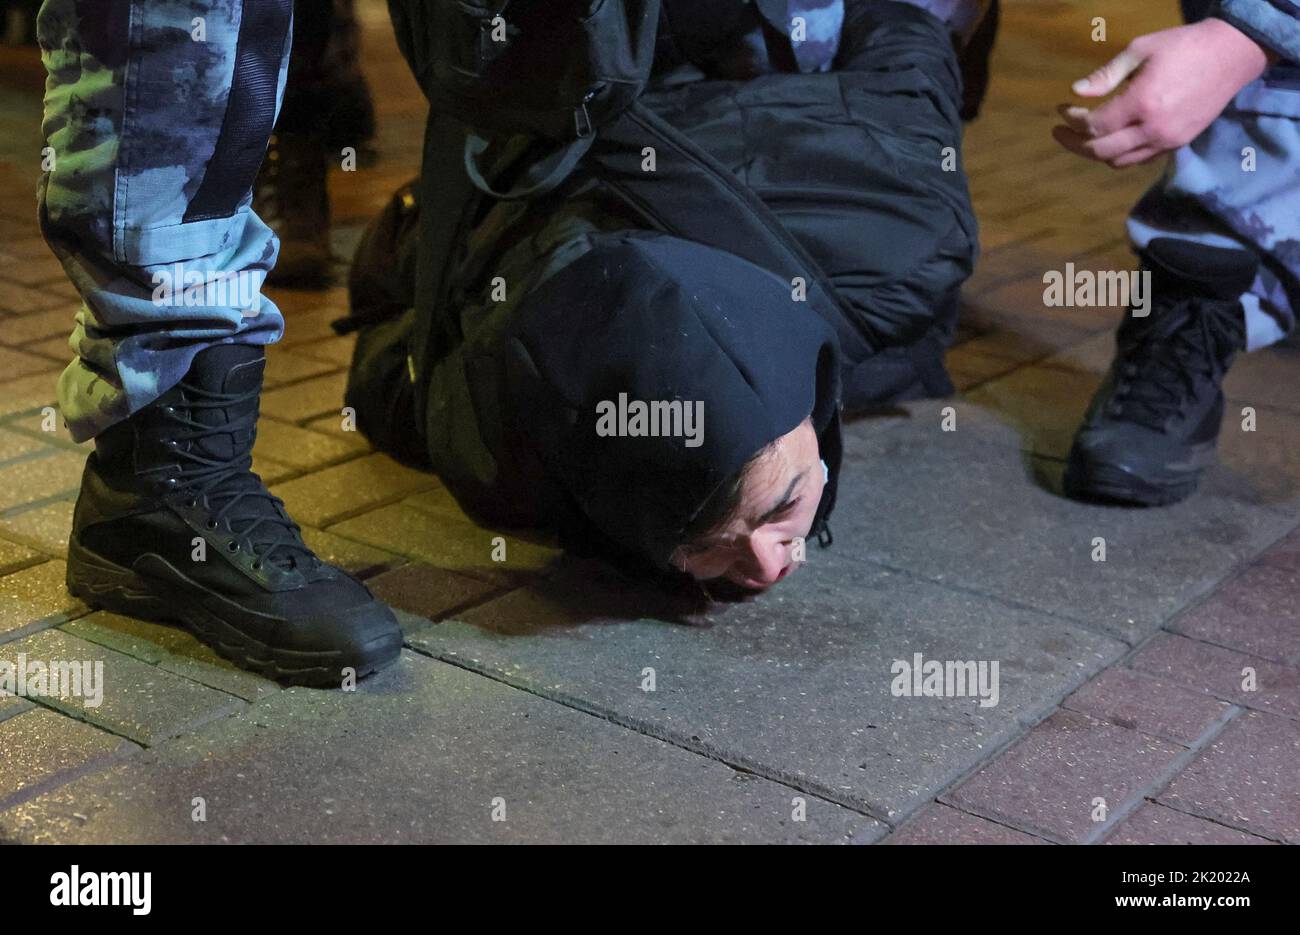 Russische Polizisten verhaften eine Person während einer nicht sanktionierten Kundgebung, nachdem Oppositionelle zu Straßenprotesten gegen die Mobilisierung von Reservisten aufgerufen hatten, die von Präsident Wladimir Putin angeordnet wurden, in Moskau, Russland, 21. September 2022. REUTERS/REUTERS-FOTOGRAF TPX-BILDER DES TAGES Stockfoto